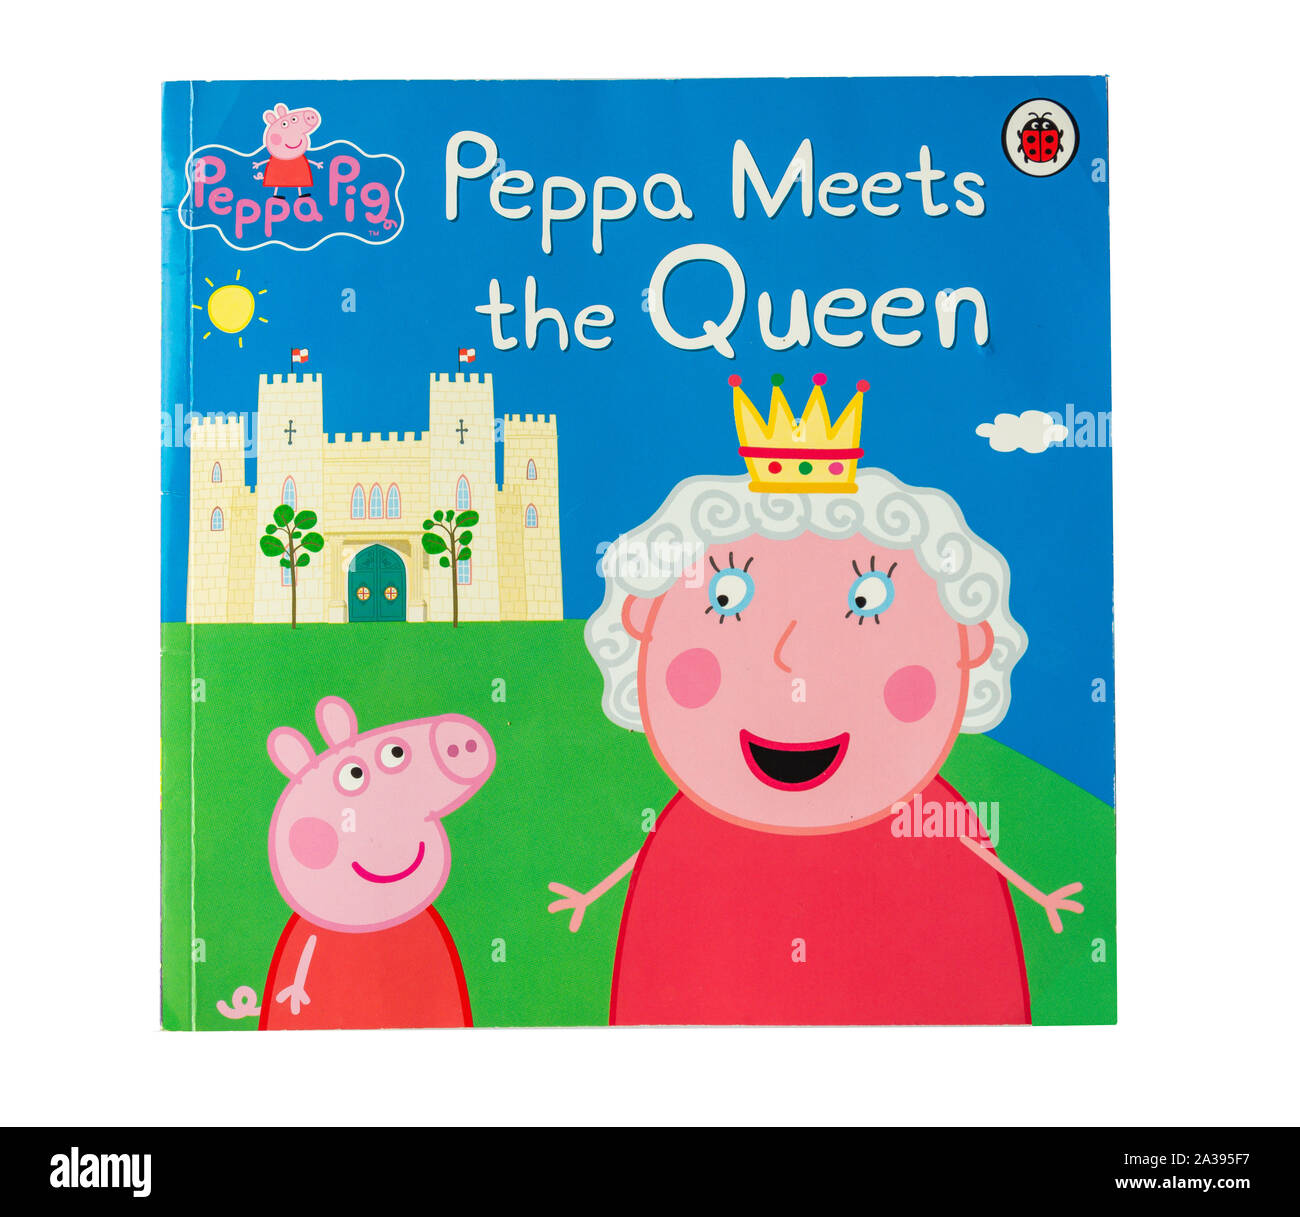 'Peppa répond aux Queen' Peppa Pig livre pour enfants, Grand Londres, Angleterre, Royaume-Uni Banque D'Images